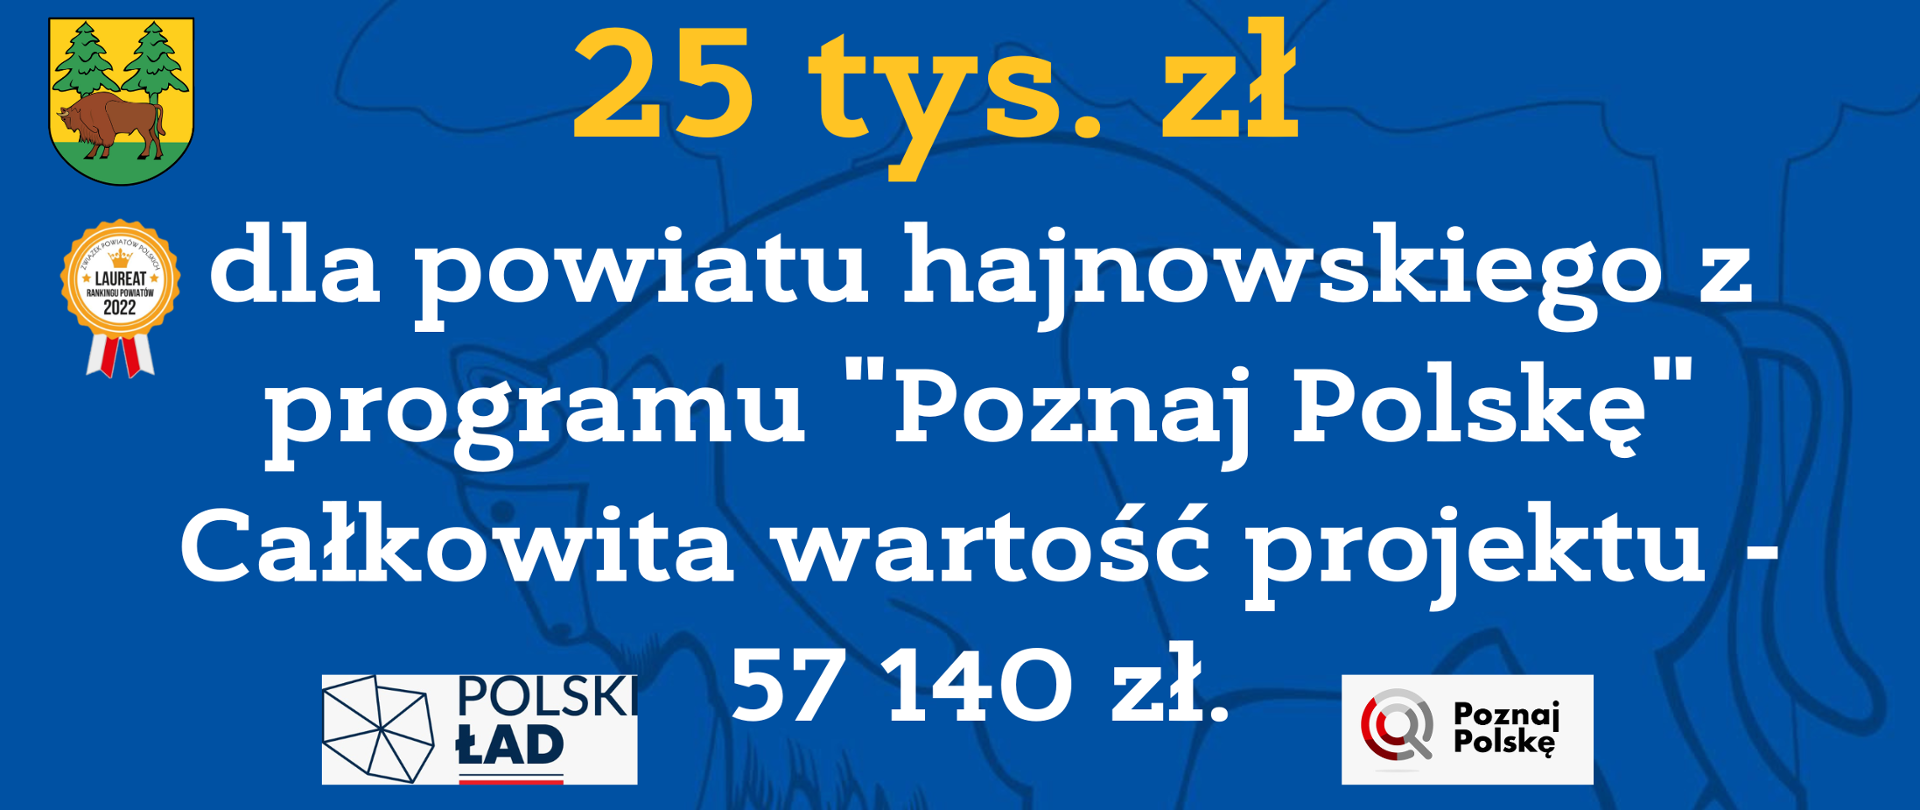 25 tys. zł dla powiatu hajnowskiego z programu "Poznaj Polskę" Całkowita wartość projektu - 57 140 zł. 